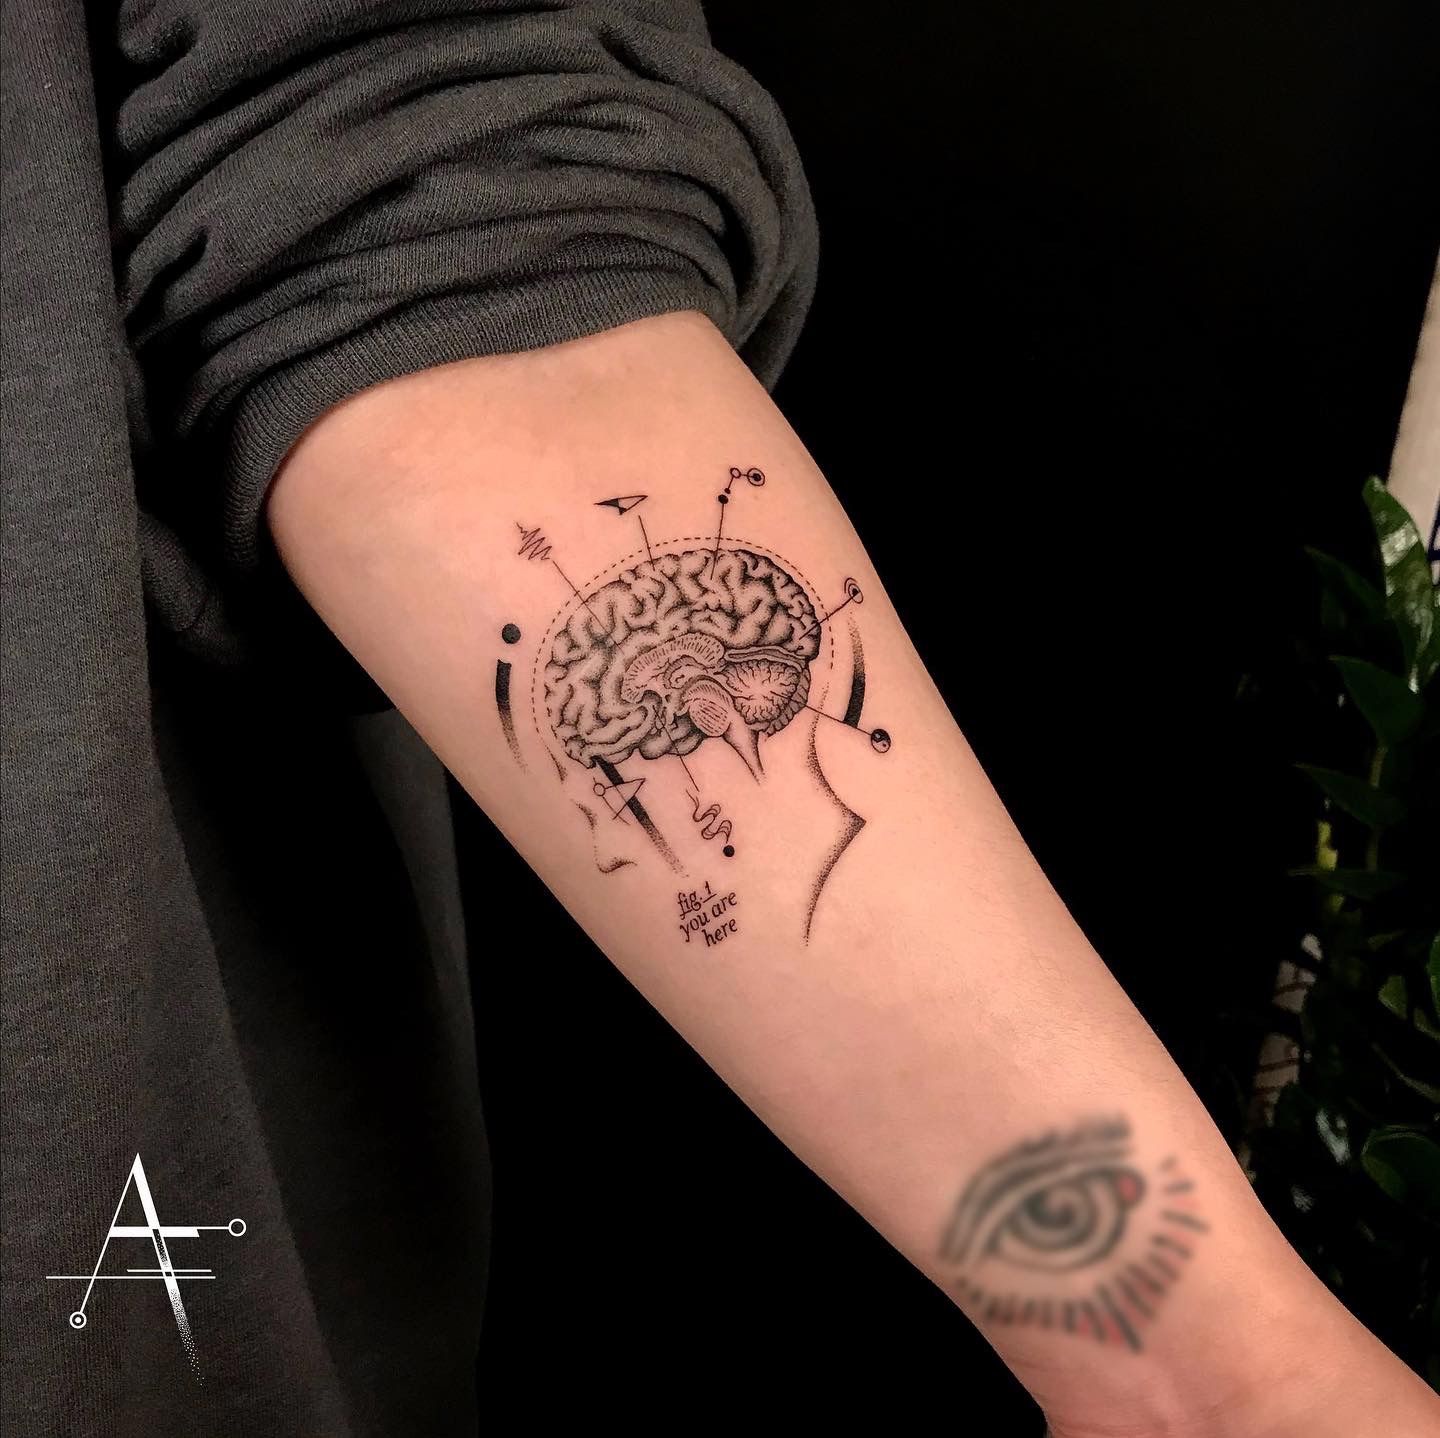 30 Impressive Tattoo Designs by Emrah Ozhan  TattooAdore  Brain tattoo  Anatomical tattoos Heart tattoo designs